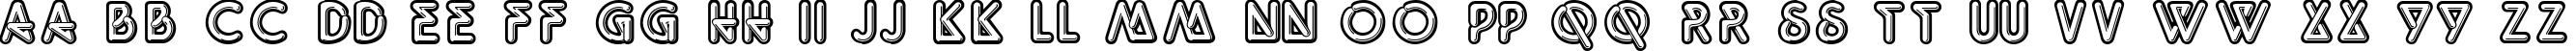 Пример написания английского алфавита шрифтом Quantum